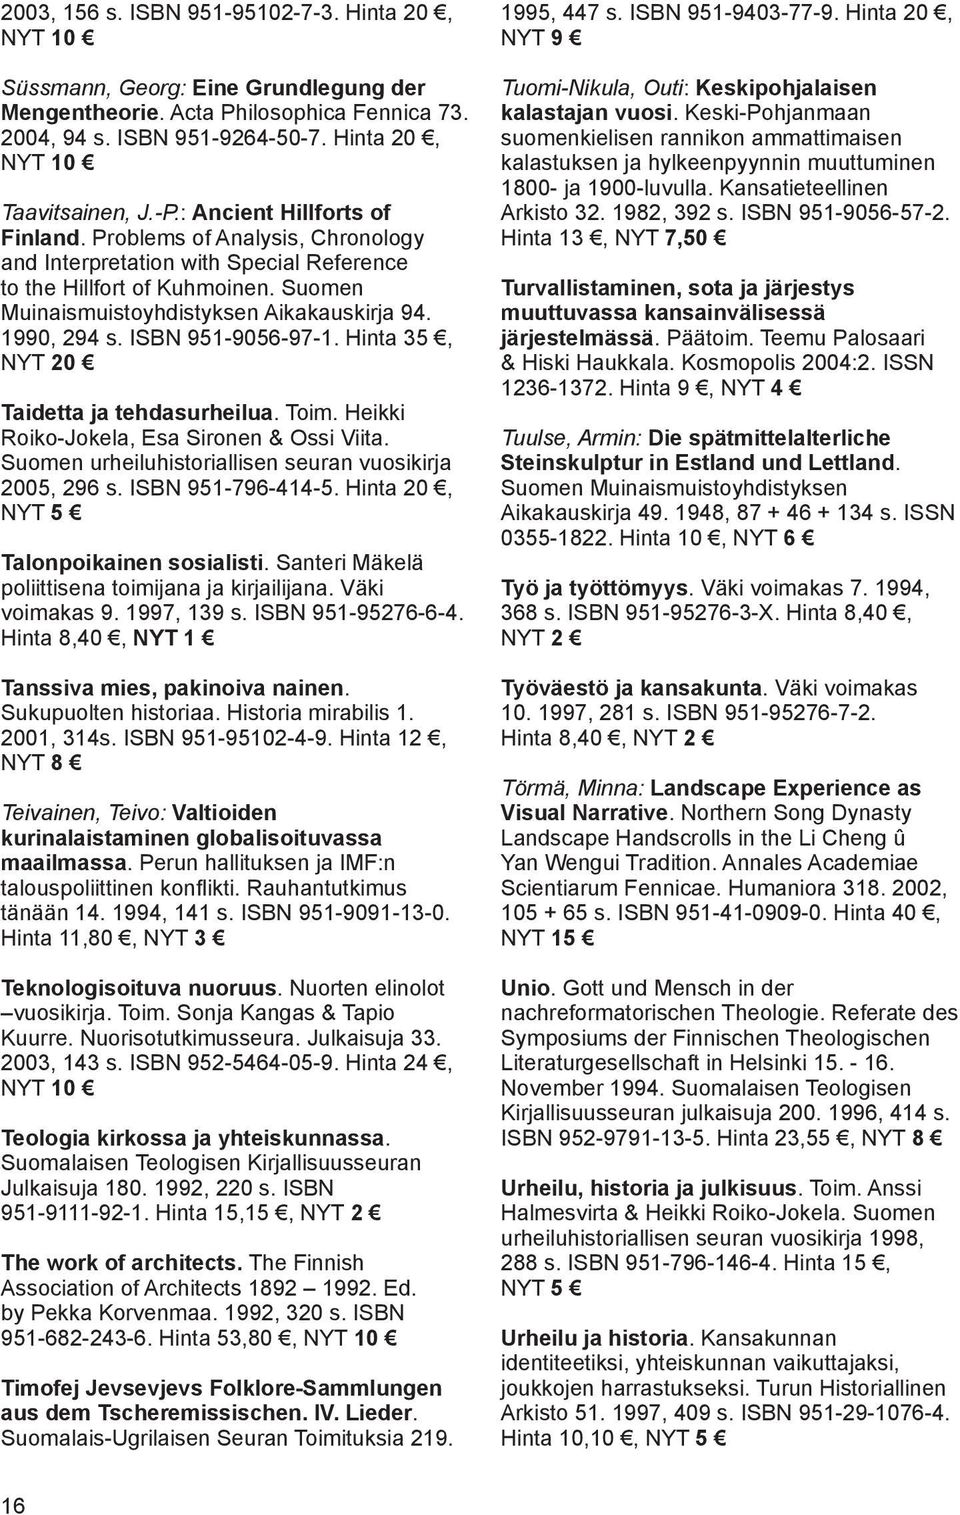 ISBN 951-9056-97-1. Hinta 35, NYT 20 Taidetta ja tehdasurheilua. Toim. Heikki Roiko-Jokela, Esa Sironen & Ossi Viita. Suomen urheiluhistoriallisen seuran vuosikirja 2005, 296 s. ISBN 951-796-414-5.